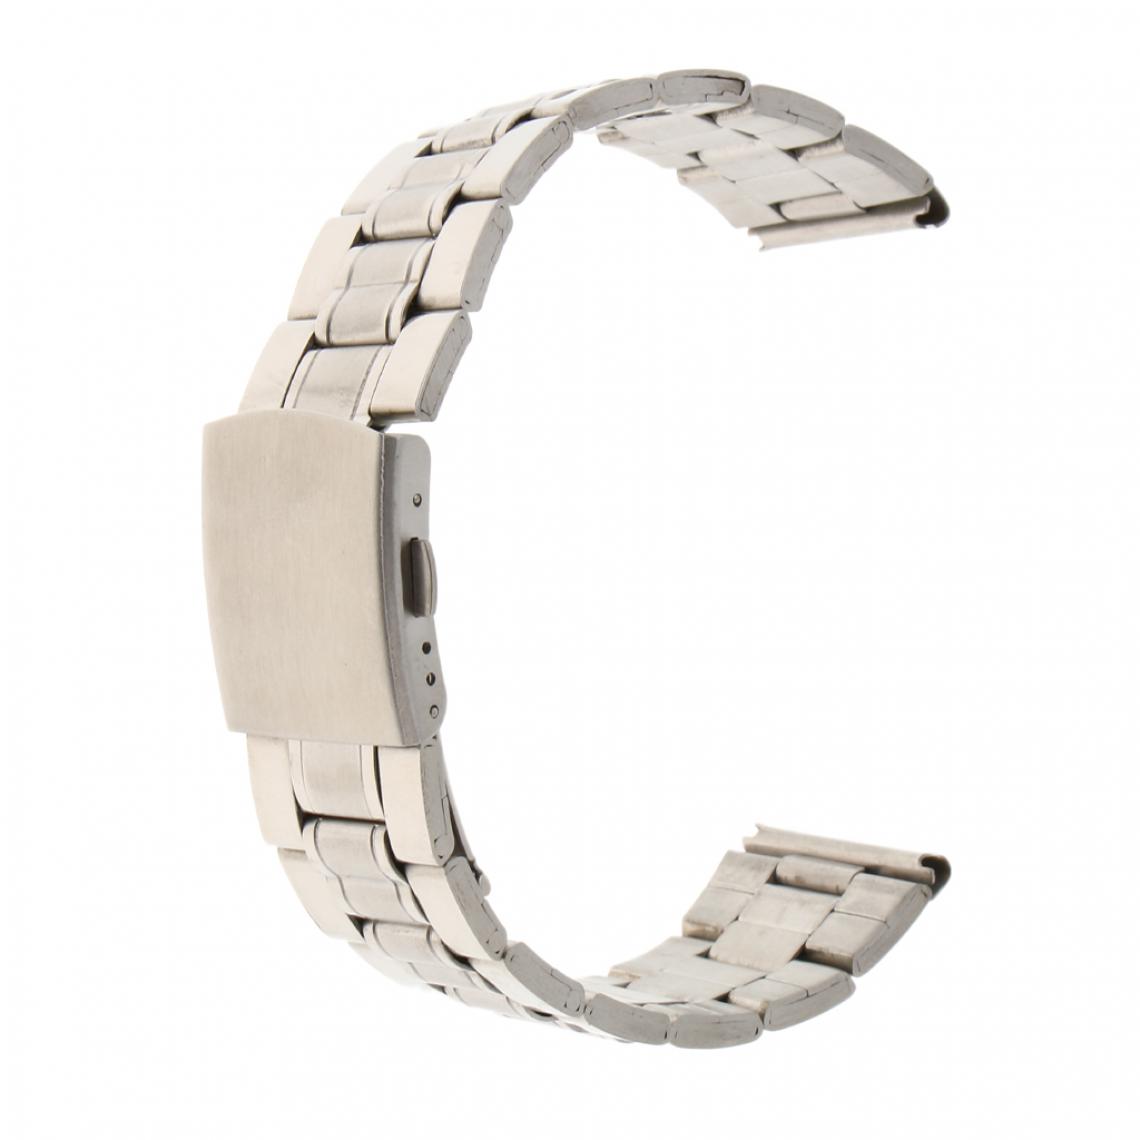 marque generique - Bande de montre pour homme solide en acier inoxydable avec boucle déployante en argent 18mm - Accessoires montres connectées